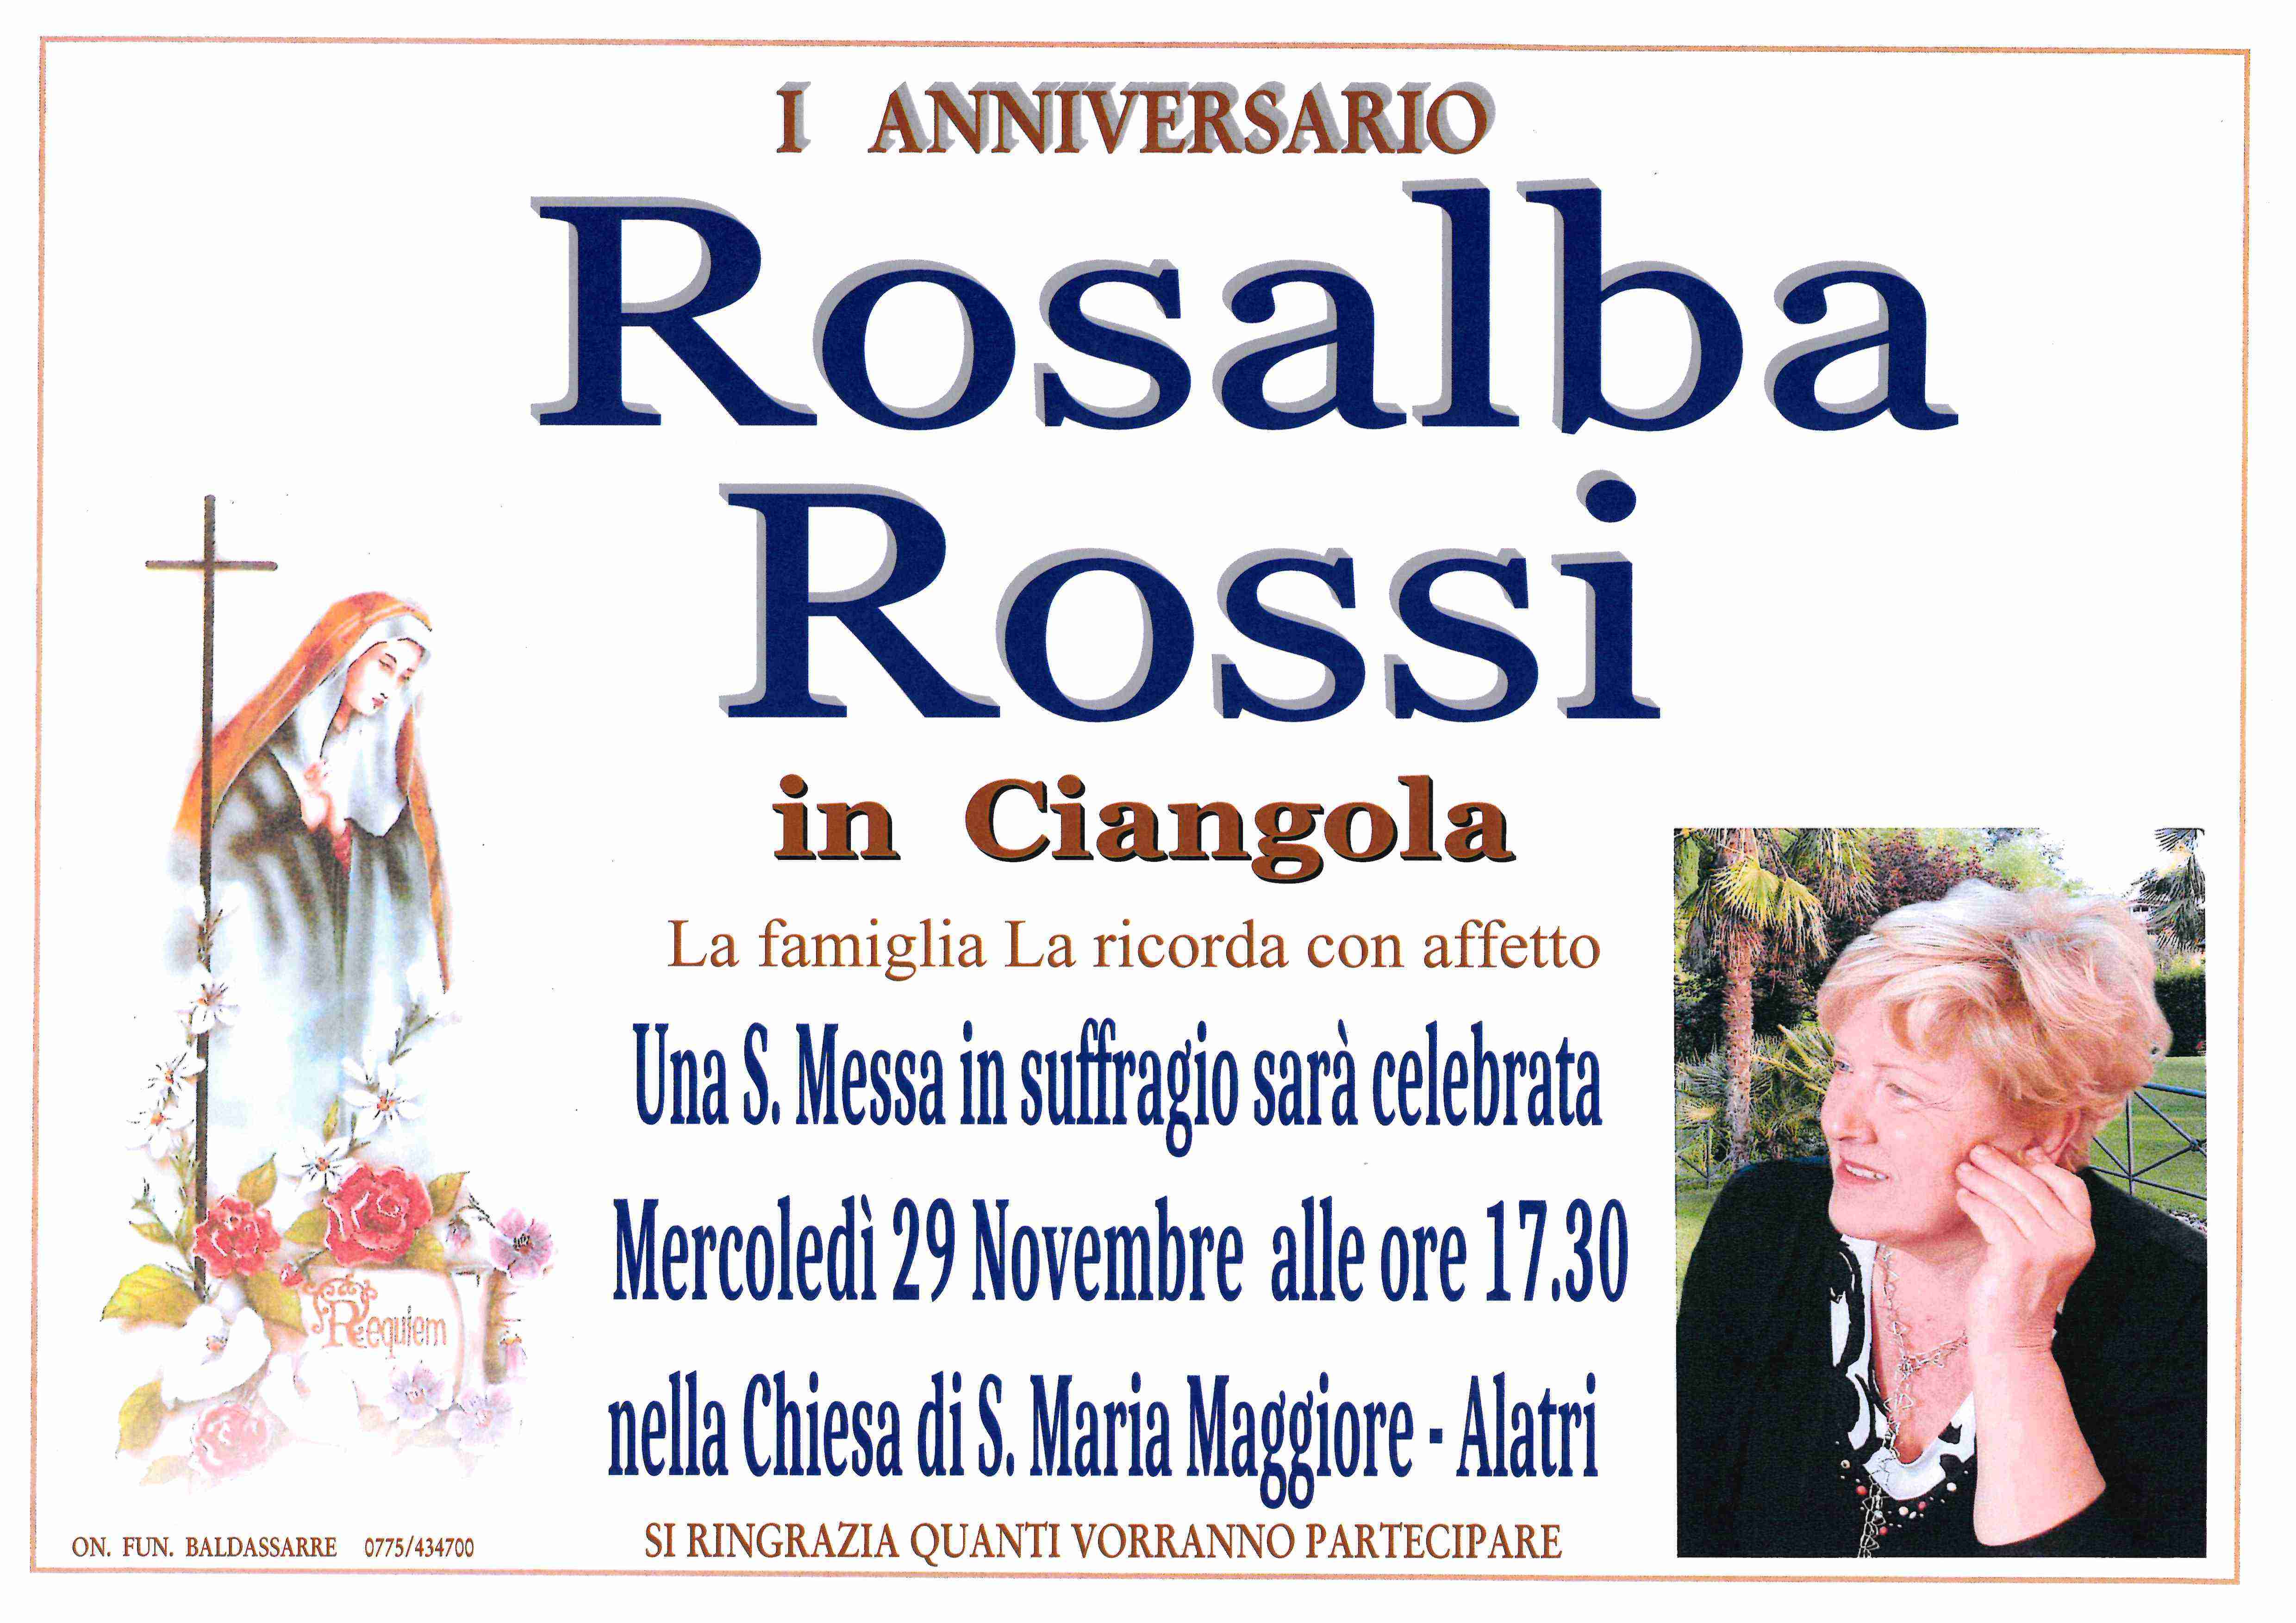 Rosalba Rossi